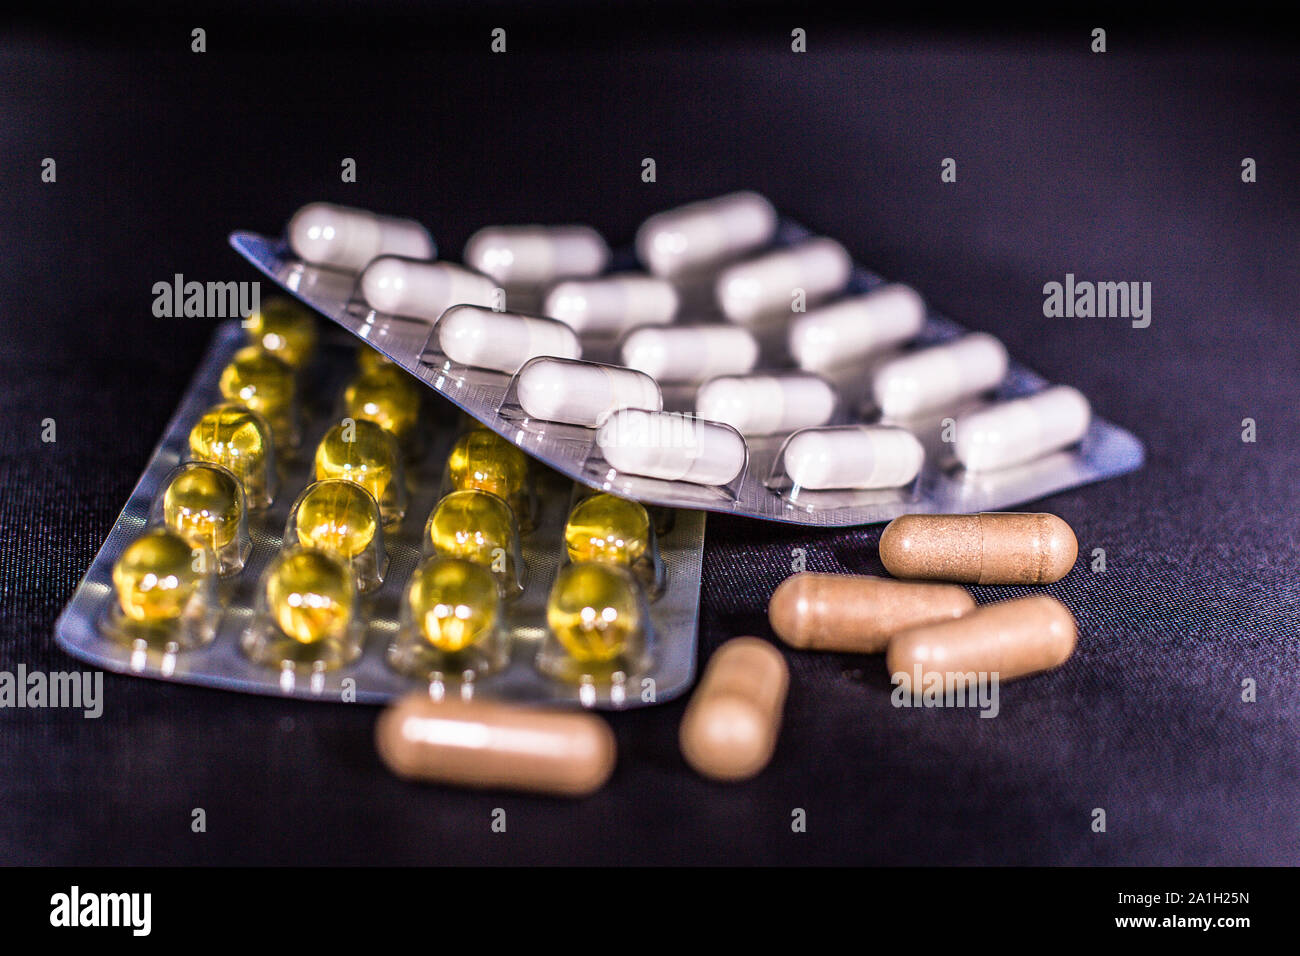 Isolierte detail Shot von verschiedenen Arten von verpackten und lose undefinierbaren Vitamine und Ergänzung Pillen, Stockfoto